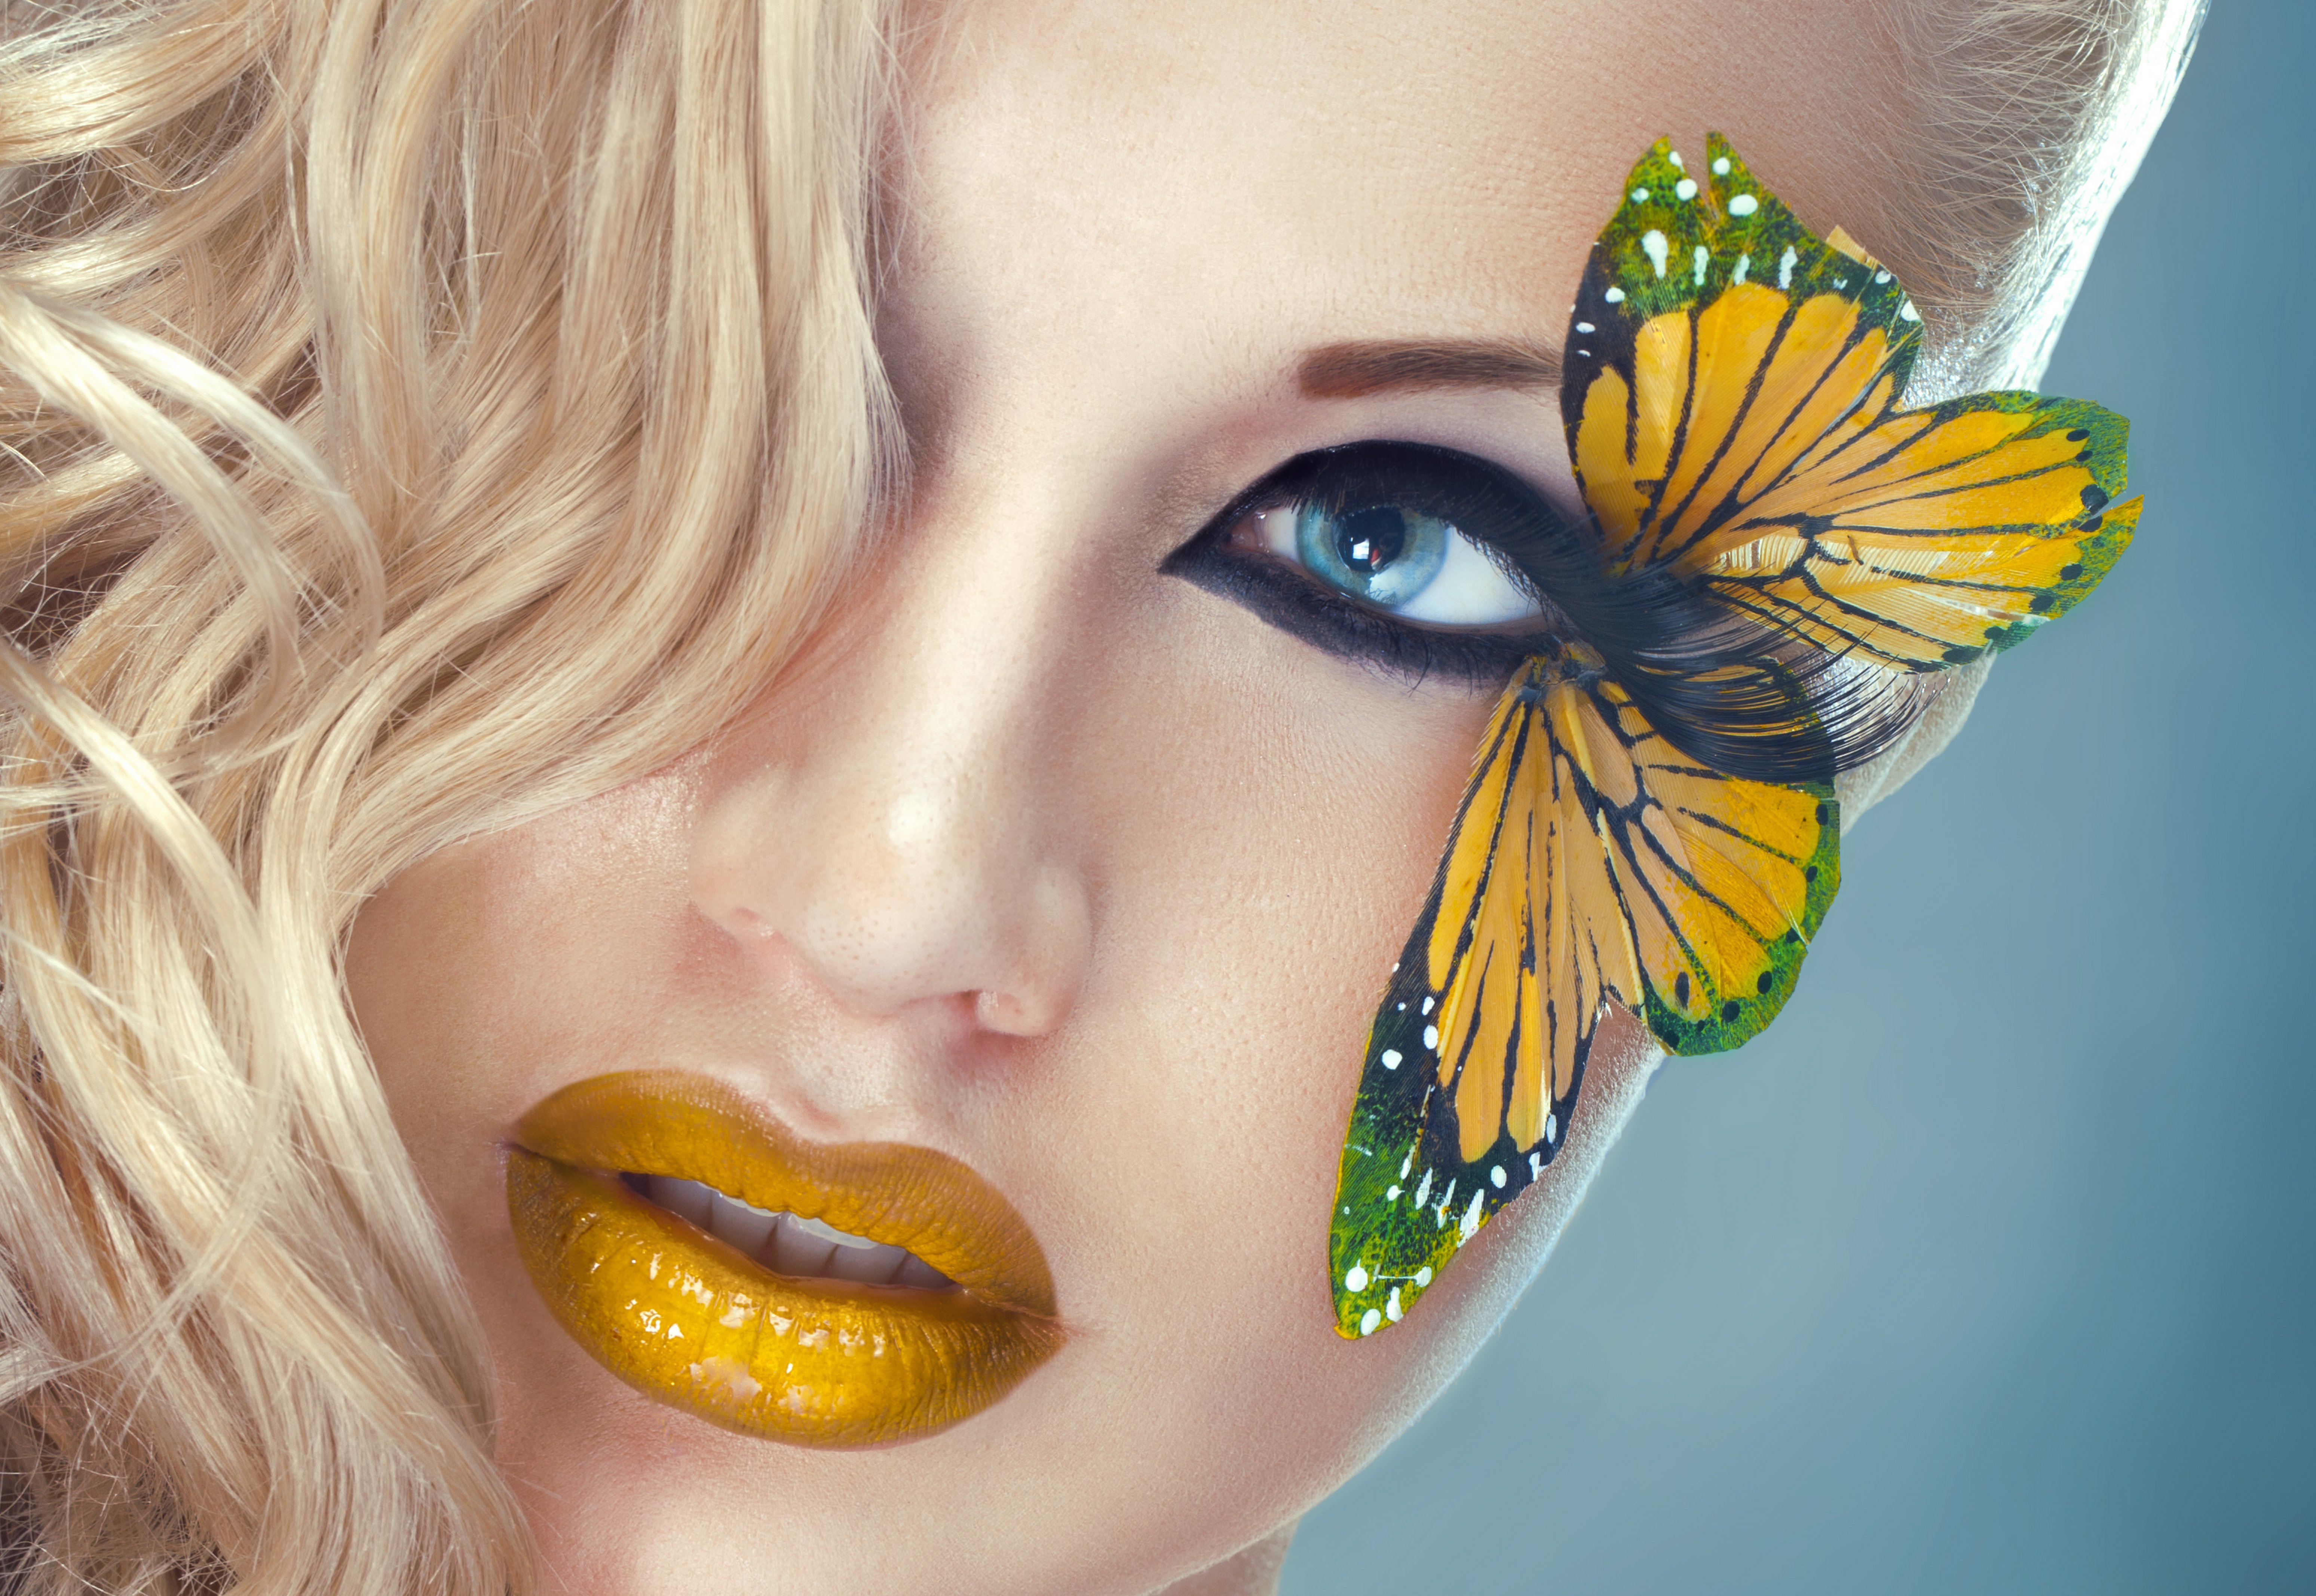 Free download wallpaper Butterfly, Blonde, Face, Women, Blue Eyes, Lipstick on your PC desktop